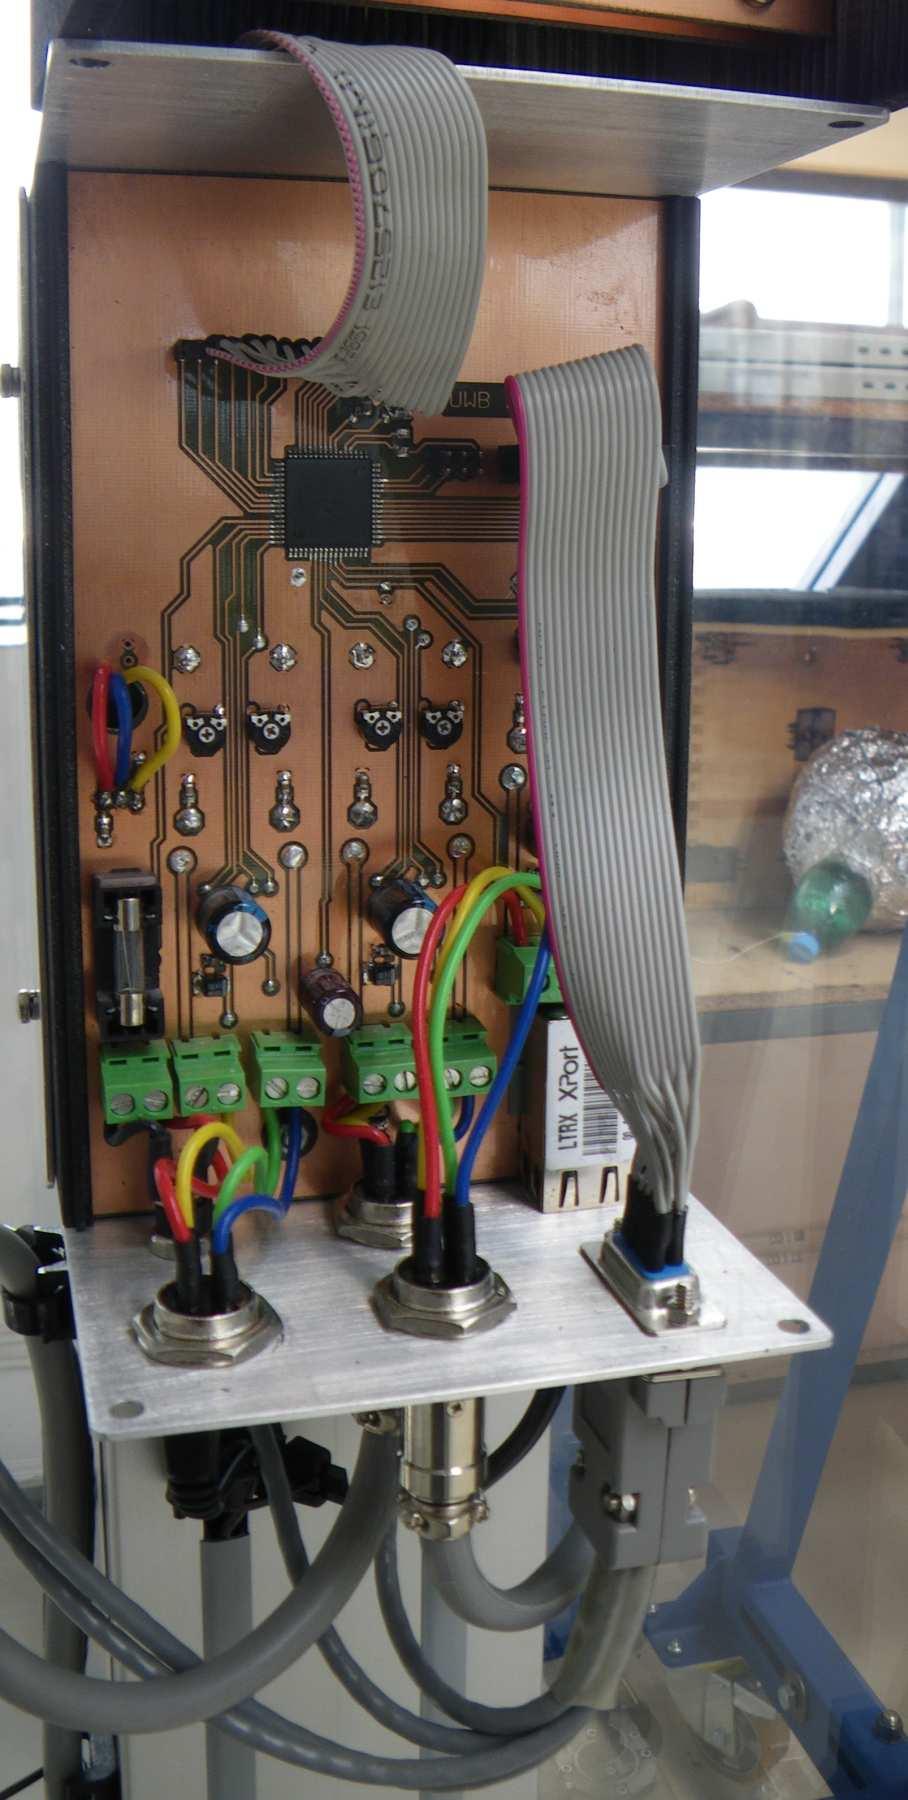 Pro napájení byl použit standardní dutinkový konektor.